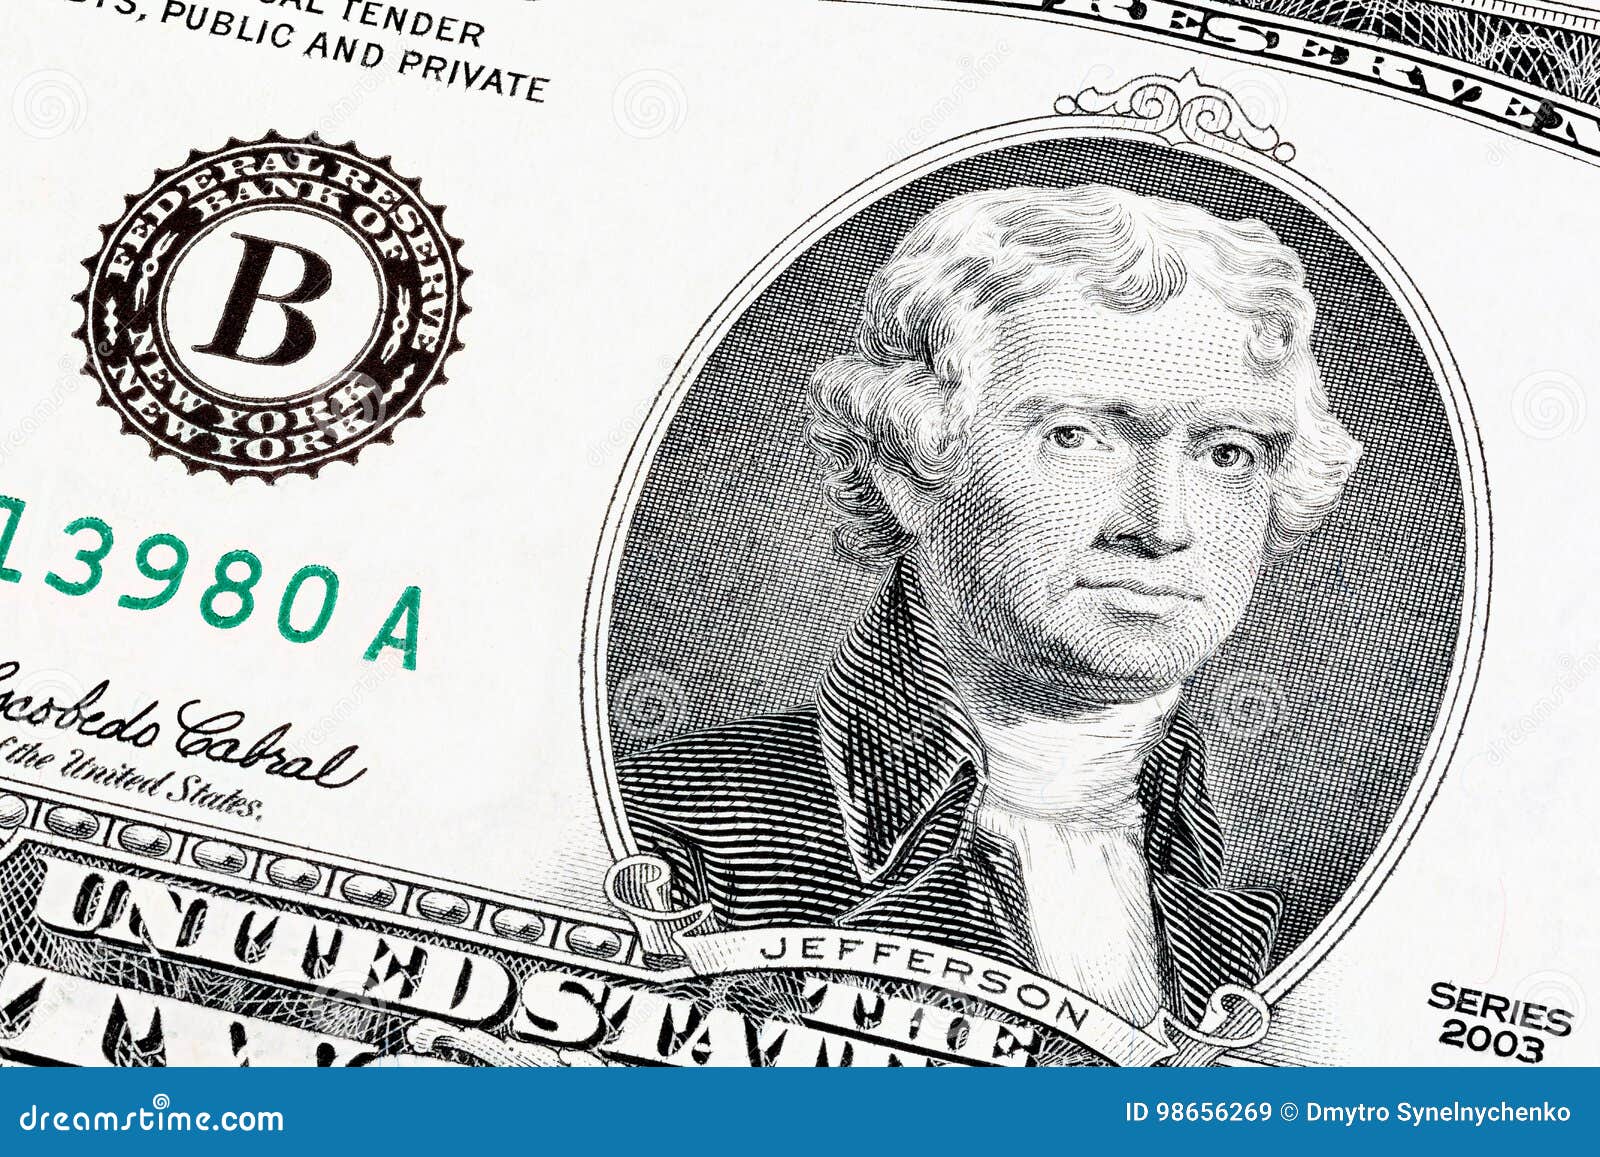 Джефферсон купюра. Доллар с портретом Джефферсона. Джефферсон какая банкнота. The end of Print.